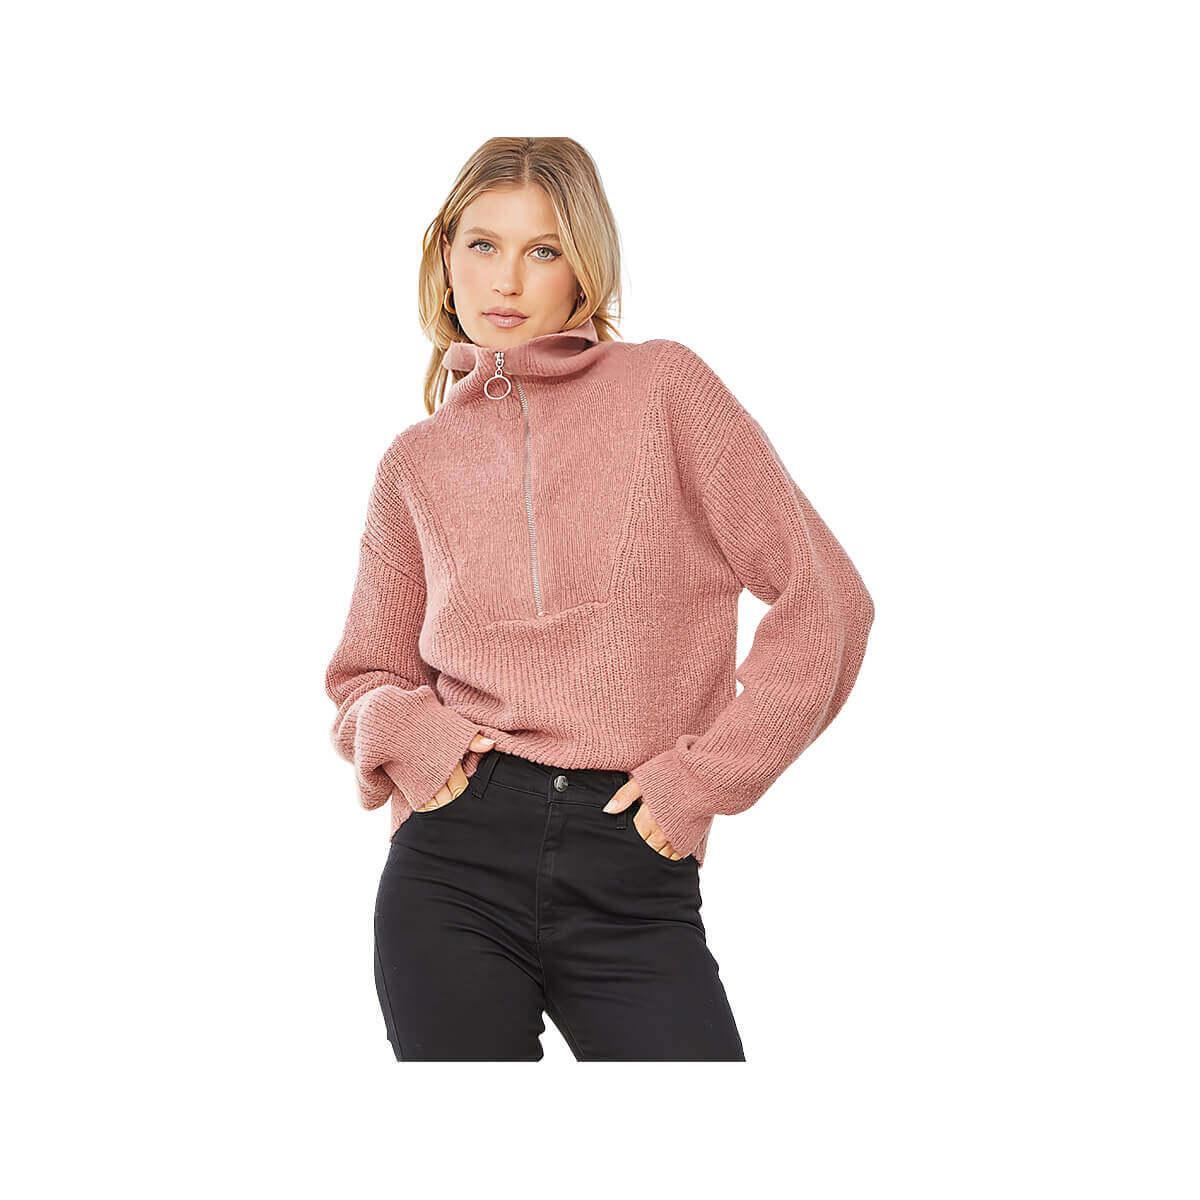  Women's Half Zip Sweater - Curvy